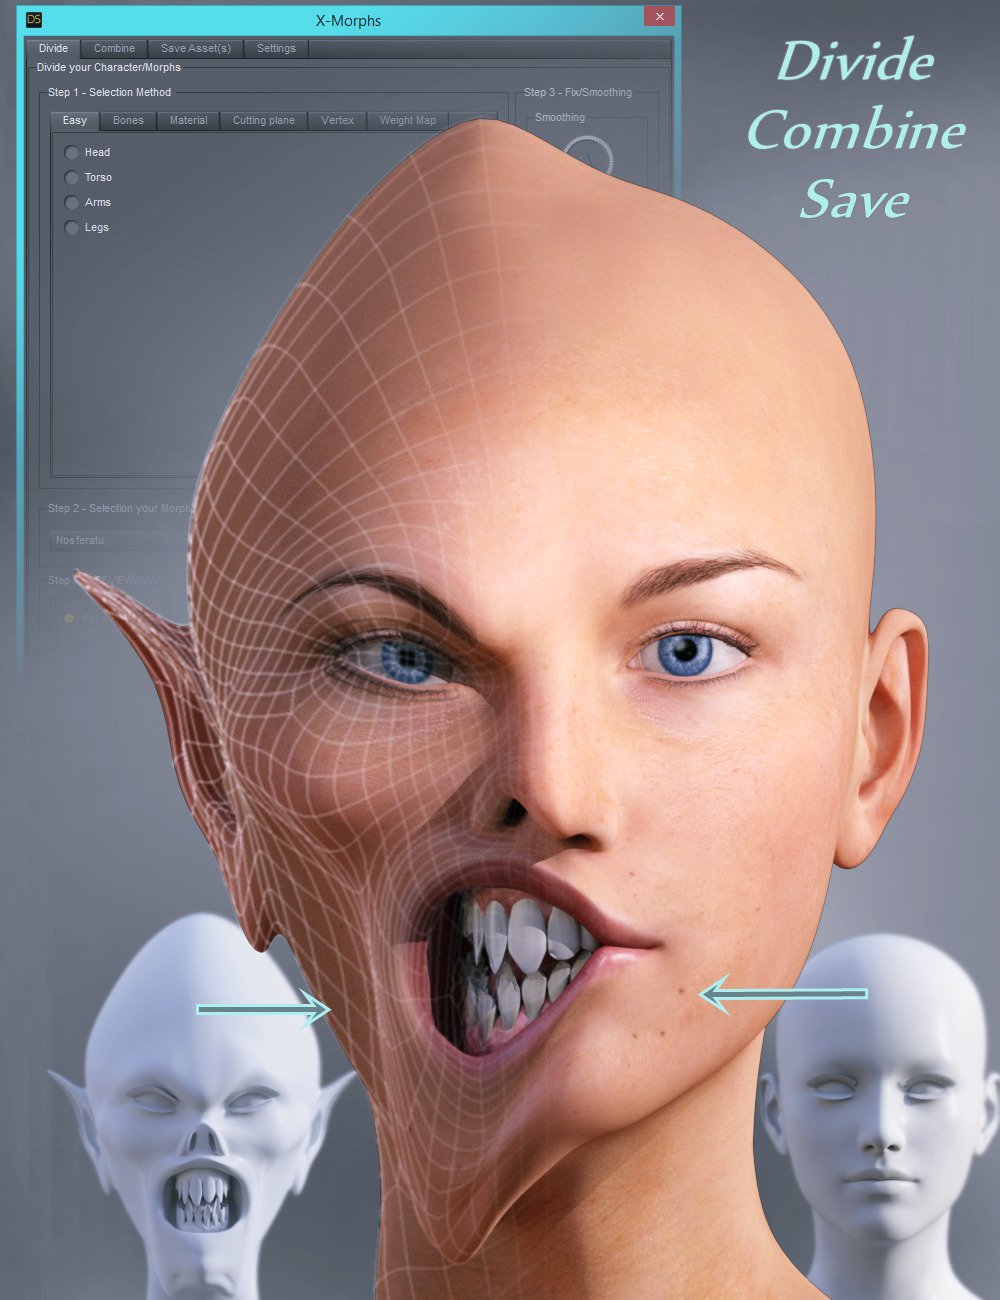 Shape Splitter by: CGI3DM, 3D Models by Daz 3D